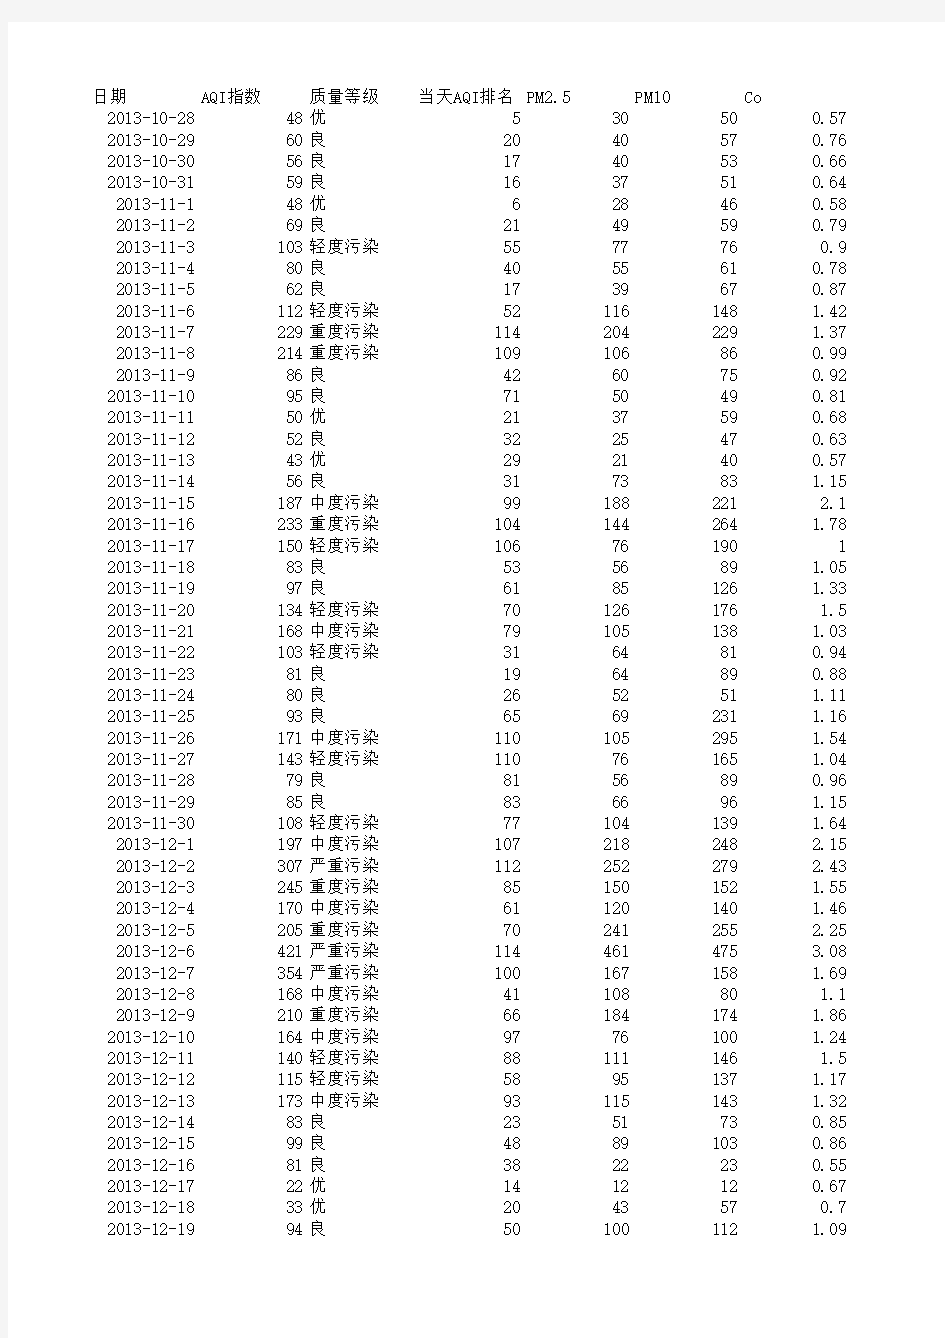 上海市2013年11月至2015年4月空气质量汇总表